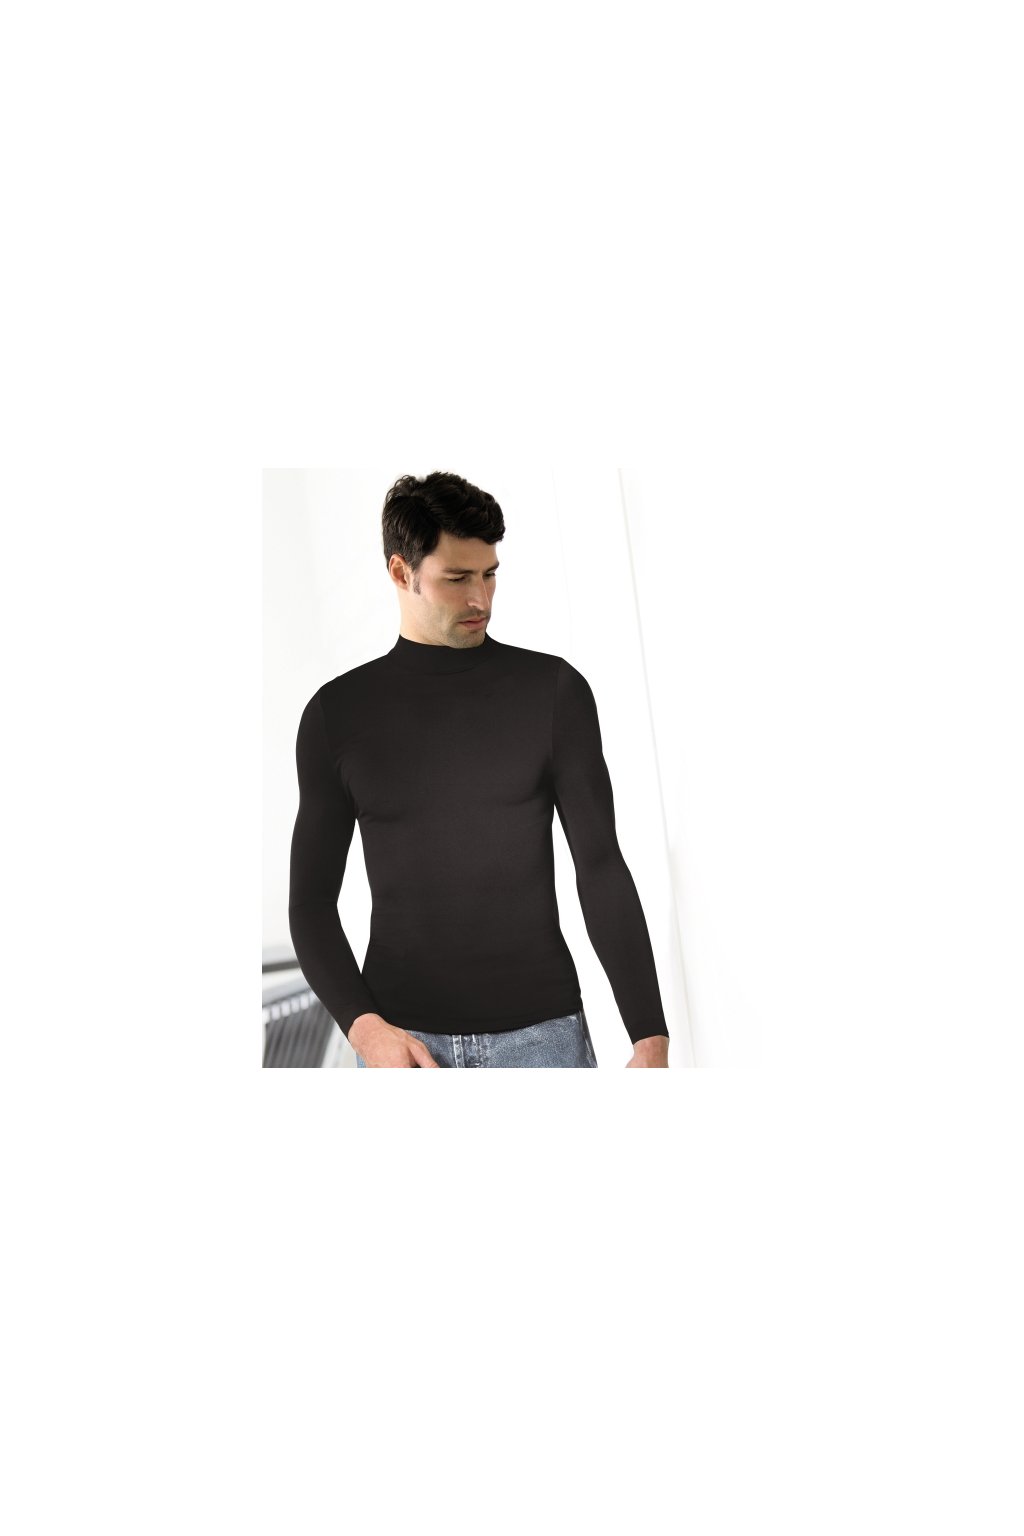 Pánské triko bezešvé T-shirt lupetto manica lunga Intimidea (Barva Černá, Velikost S/M)